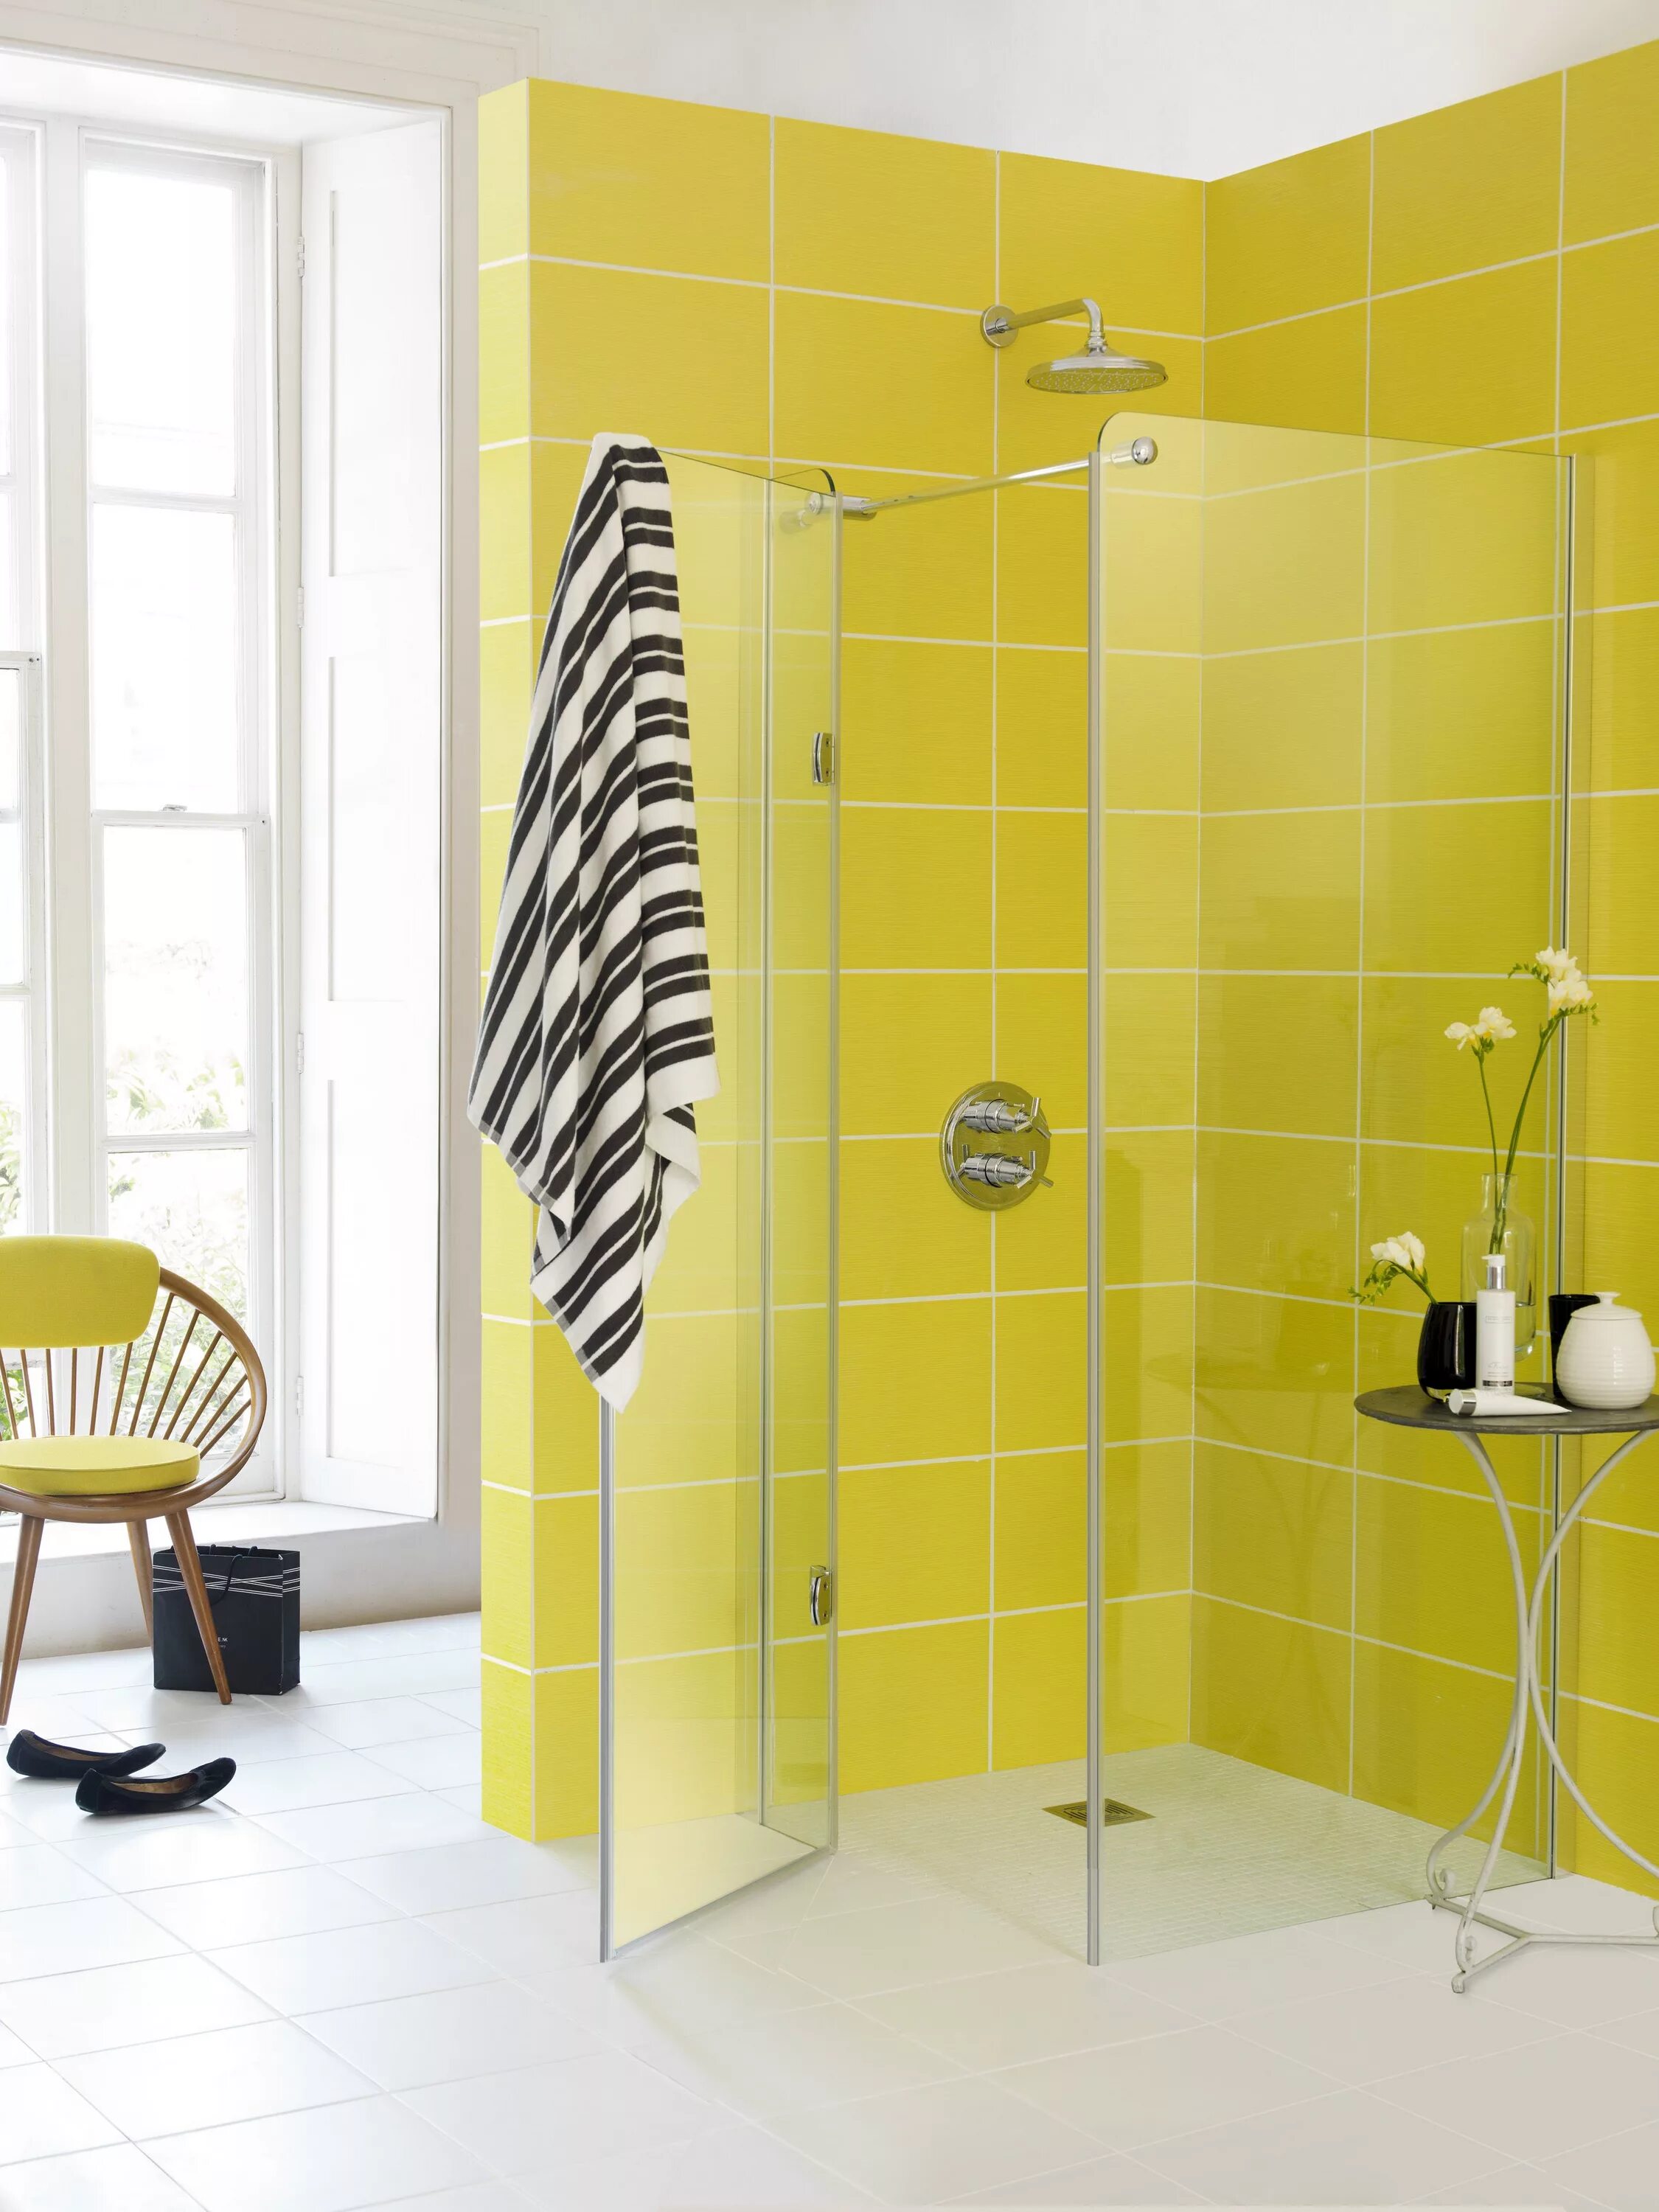 Желтая плитка купить. Желтая плитка для ванной комнаты. Желтая ванная. Желтая ванная комната. Желтая ванная с душевой кабиной.